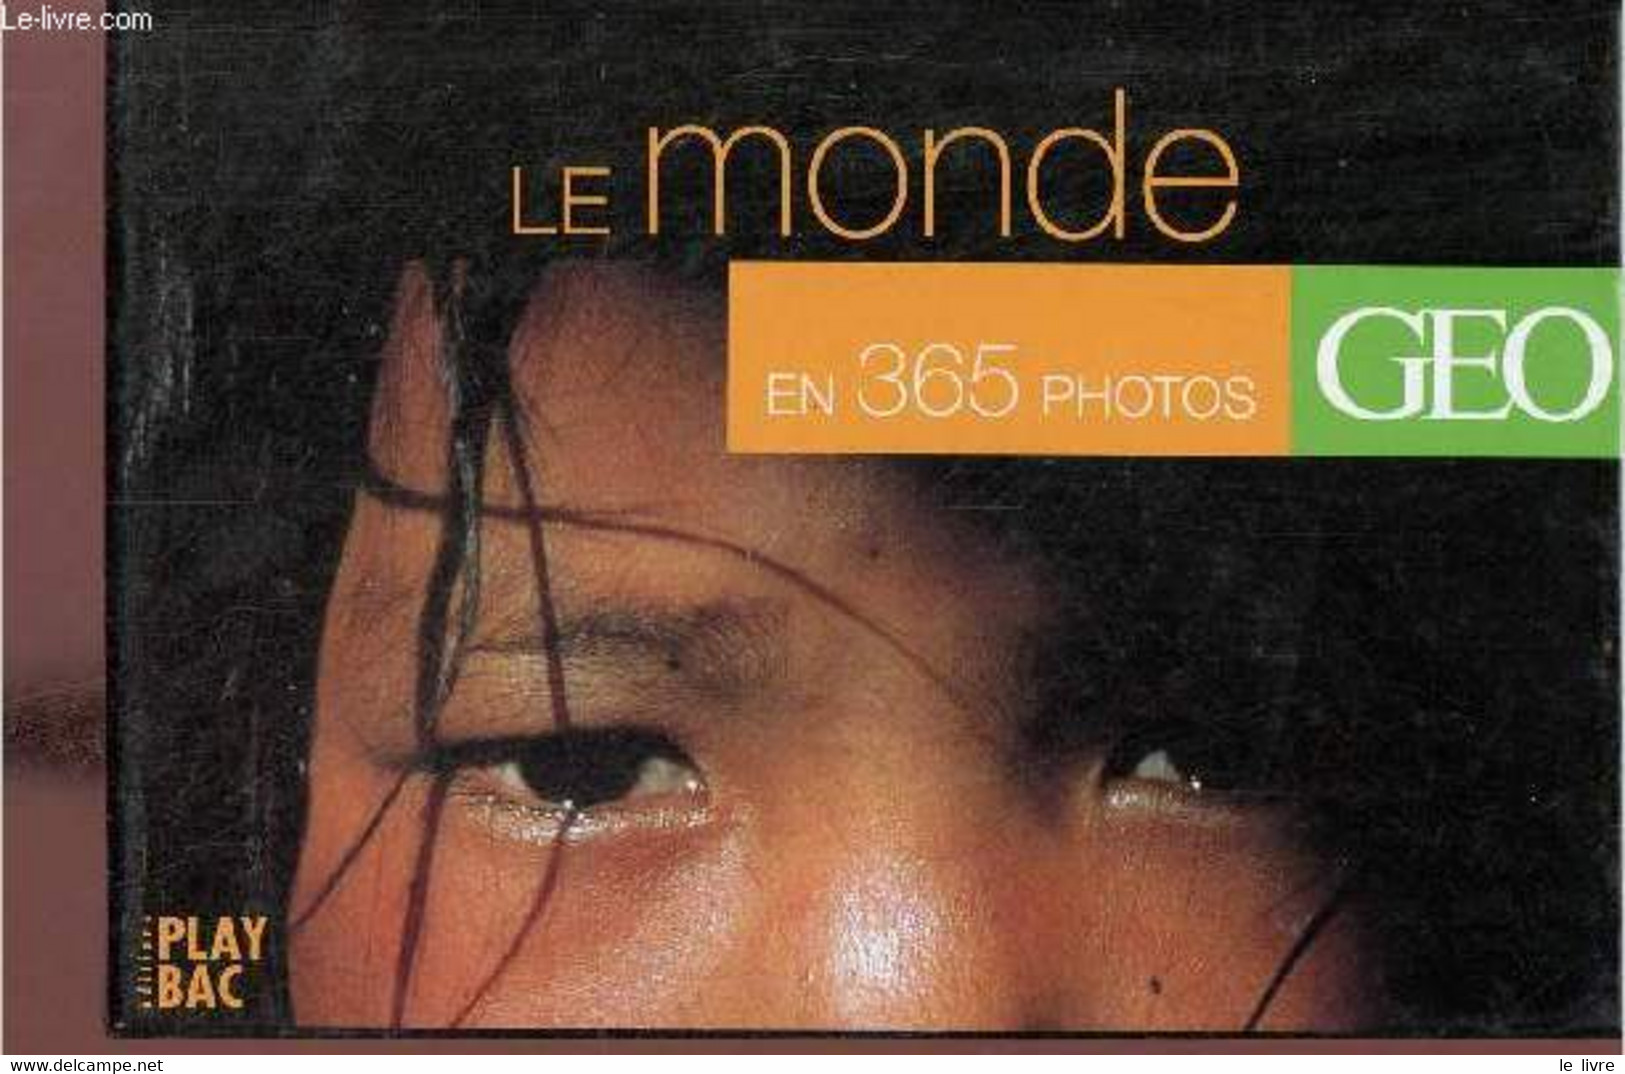 Le Monde En 365 Photos - Geo. - Collectif - 2001 - Agendas & Calendarios